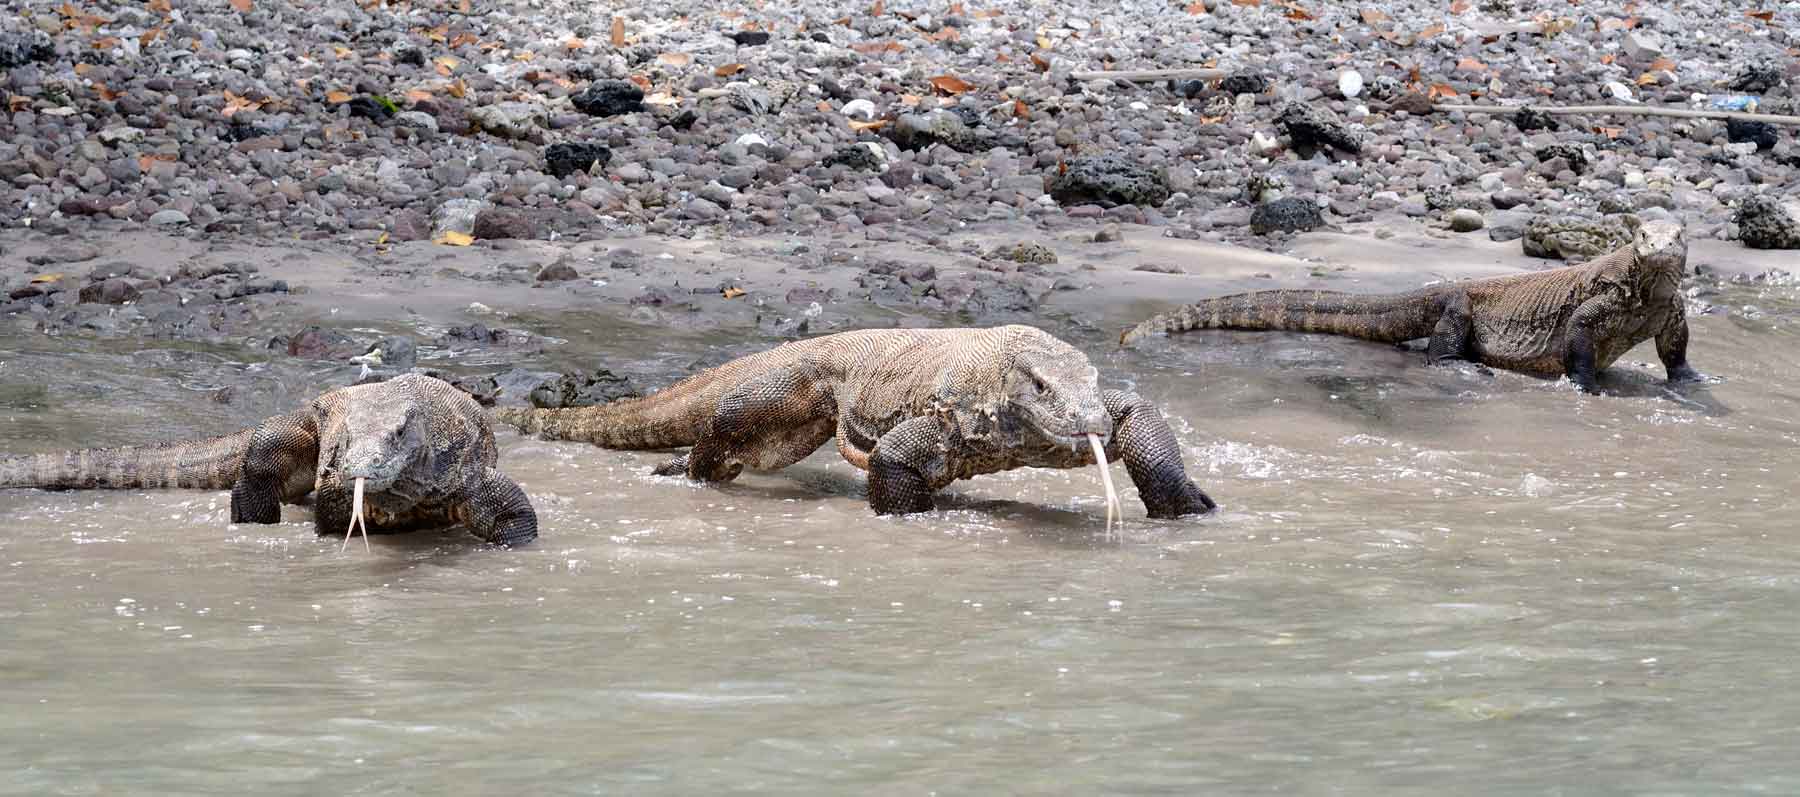 Komodo Dragons on the beach (Ben Jackson)